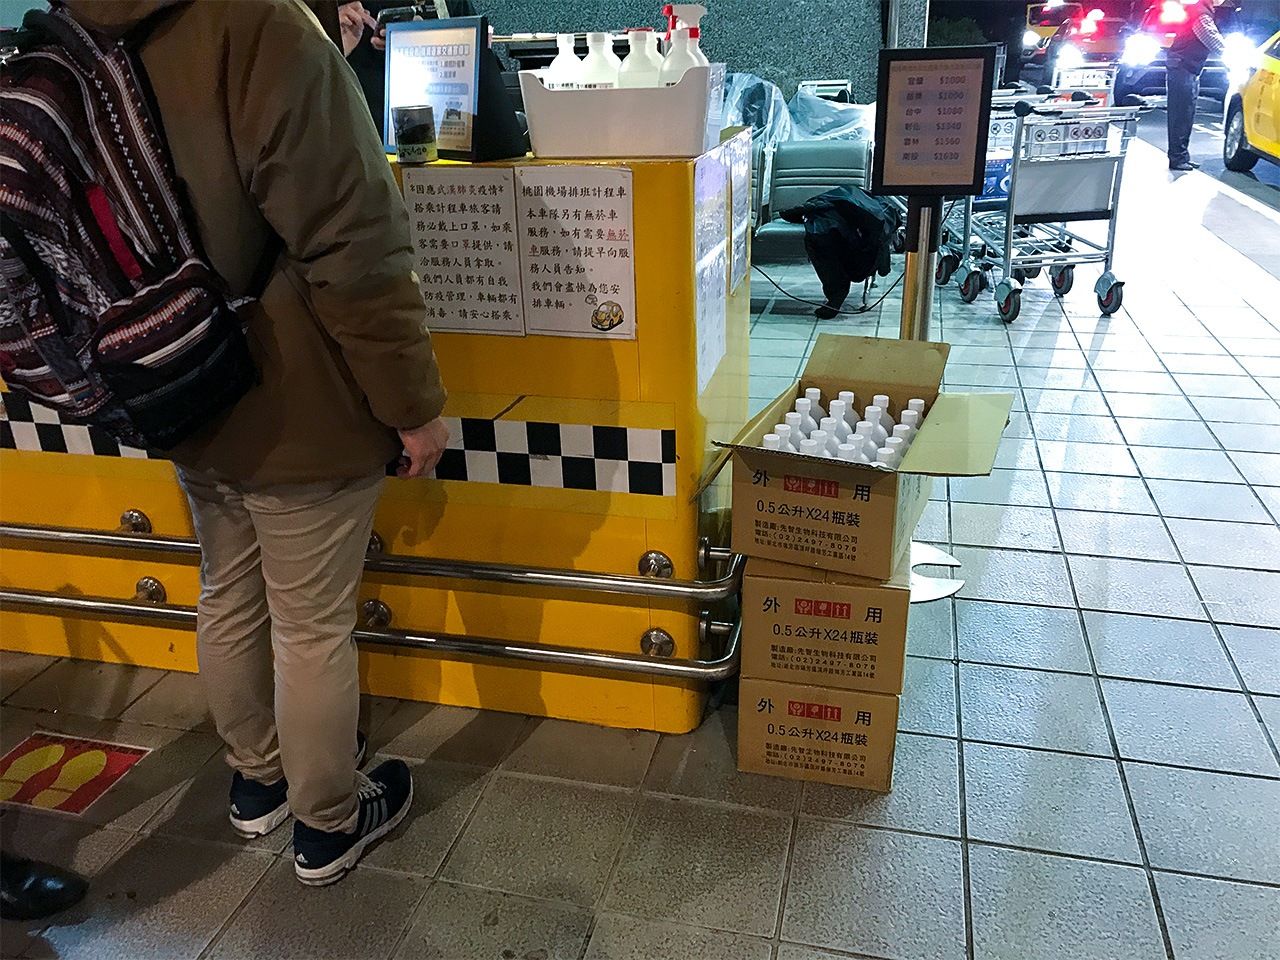 À la station de taxis de l’aéroport, des boîtes remplies de bouteilles de désinfectant hydroalcoolique sont prévues pour que les chauffeurs de taxi puissent désinfecter leur véhicule avant l’arrivée d’un nouveau passager.